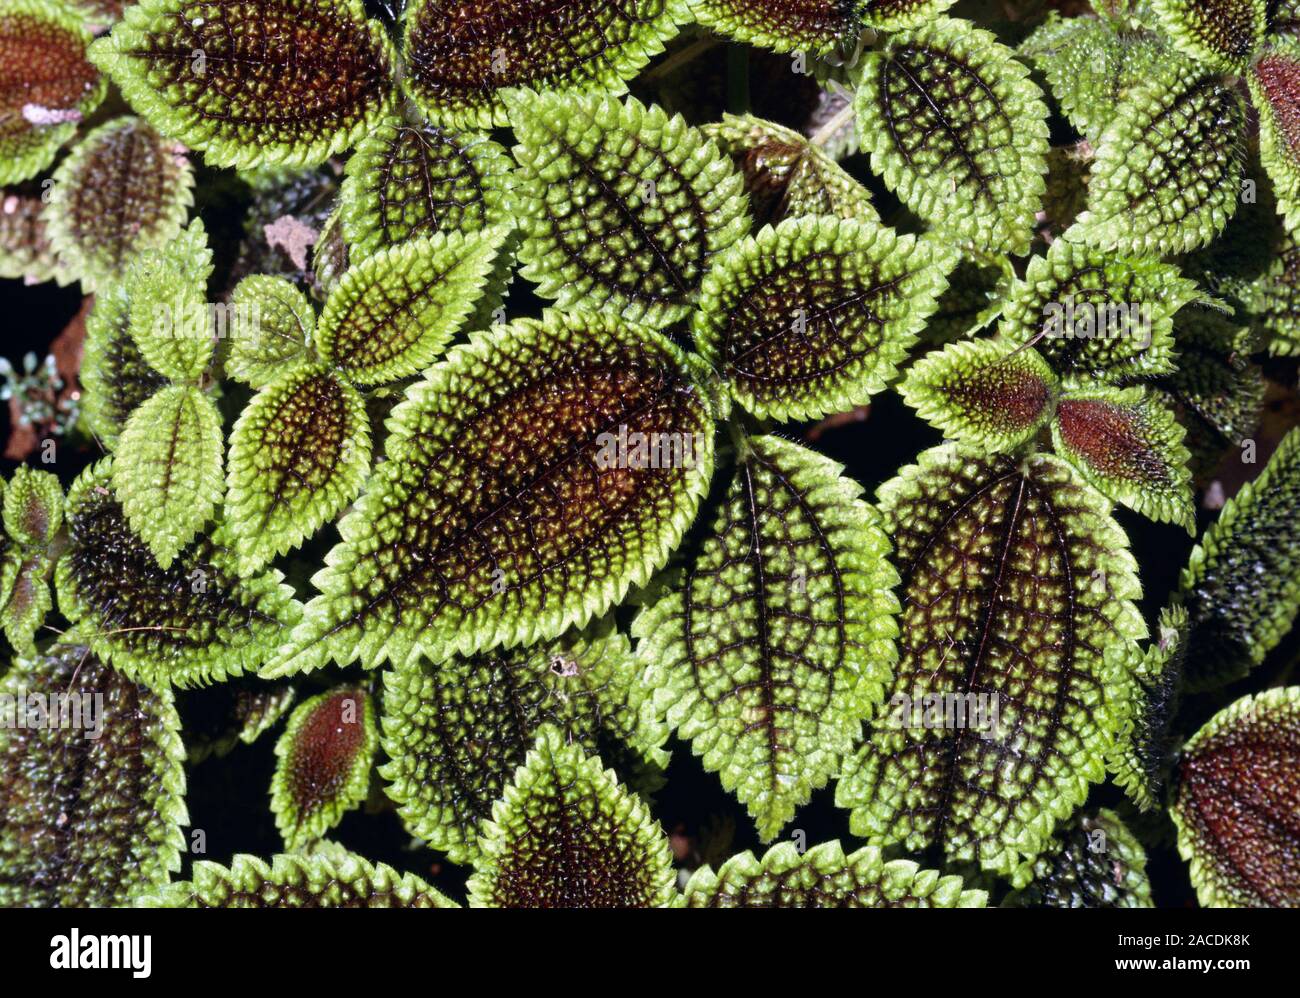 Freundschaft pflanze Blätter (Pilea involucrata Stockfotografie - Alamy